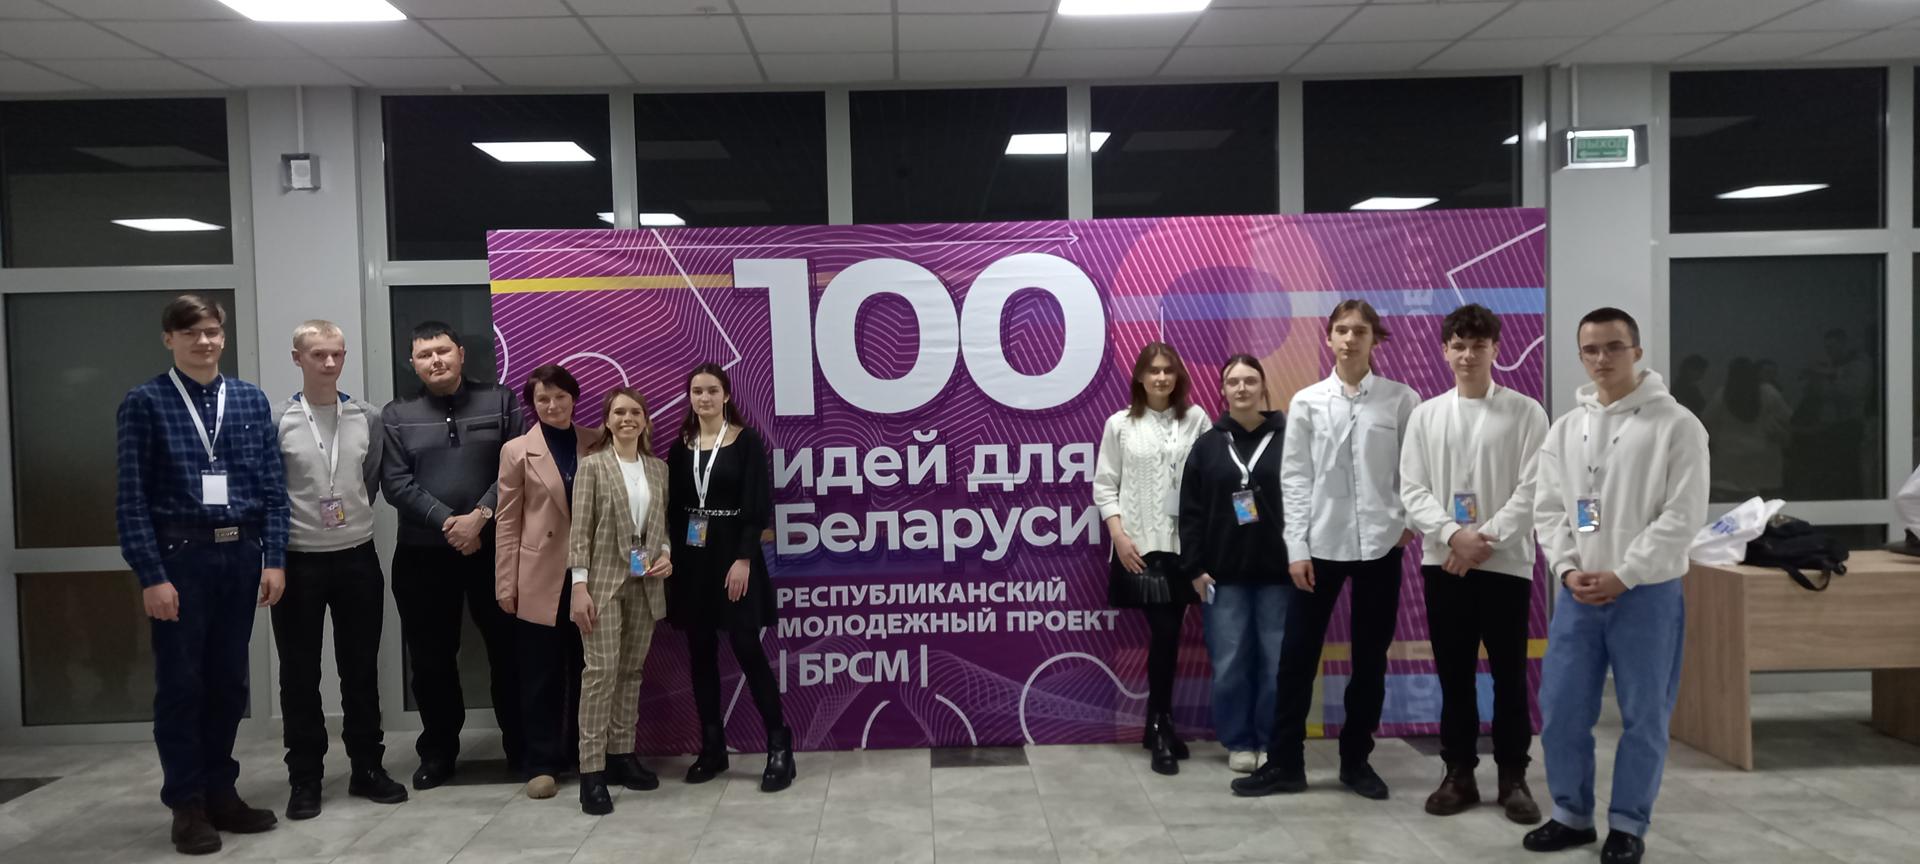 Победа в городском этапе республиканского молодежного проекта «100 идей для Беларуси»